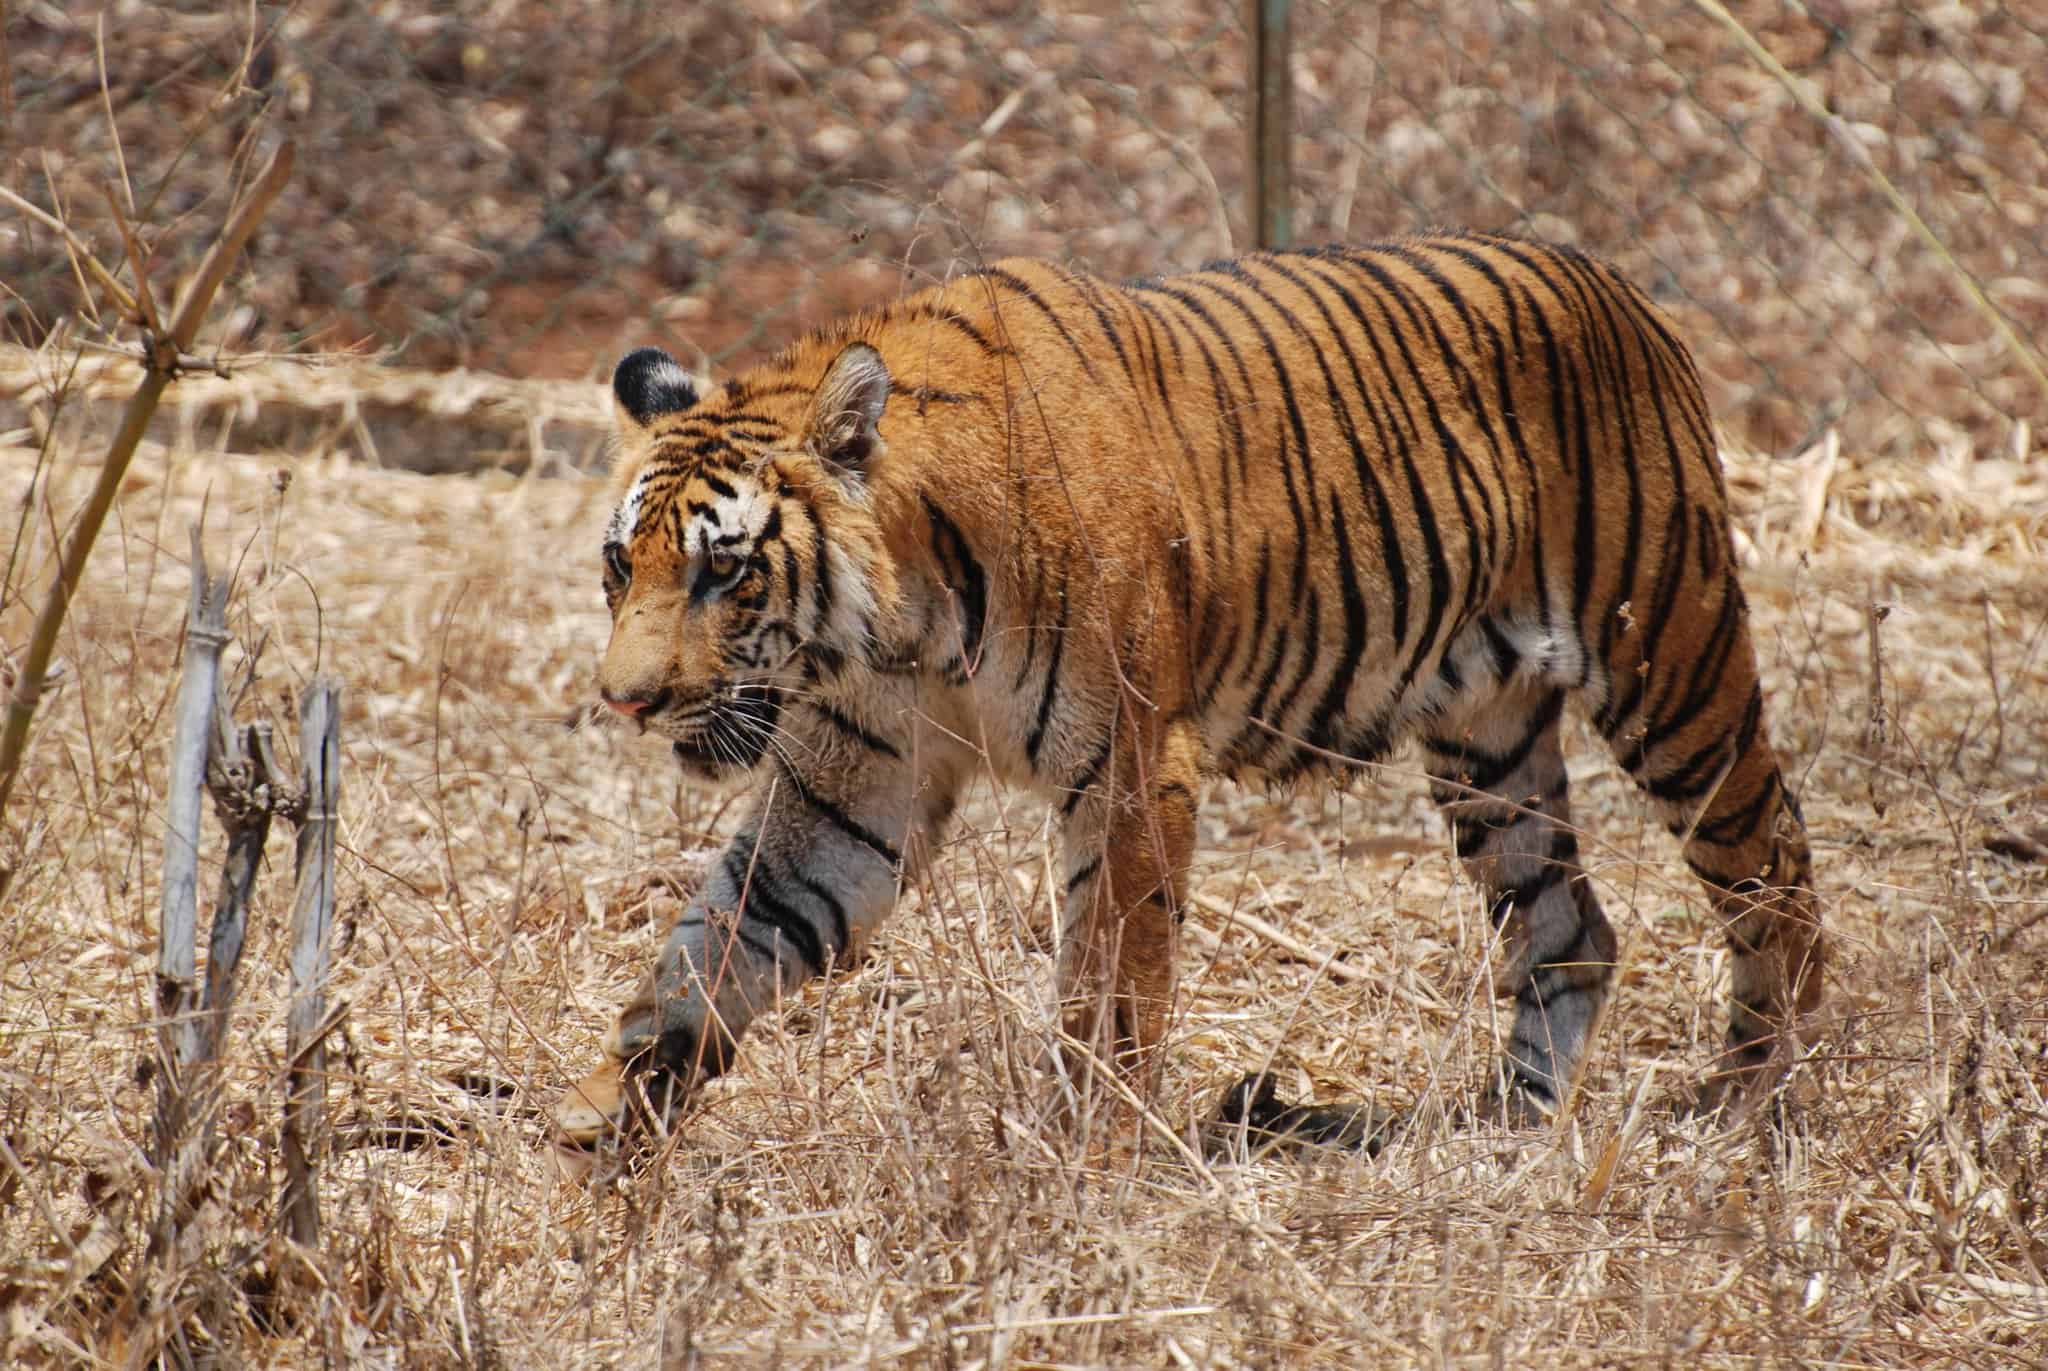 Resultado de imagem para white tiger and orange tiger mix